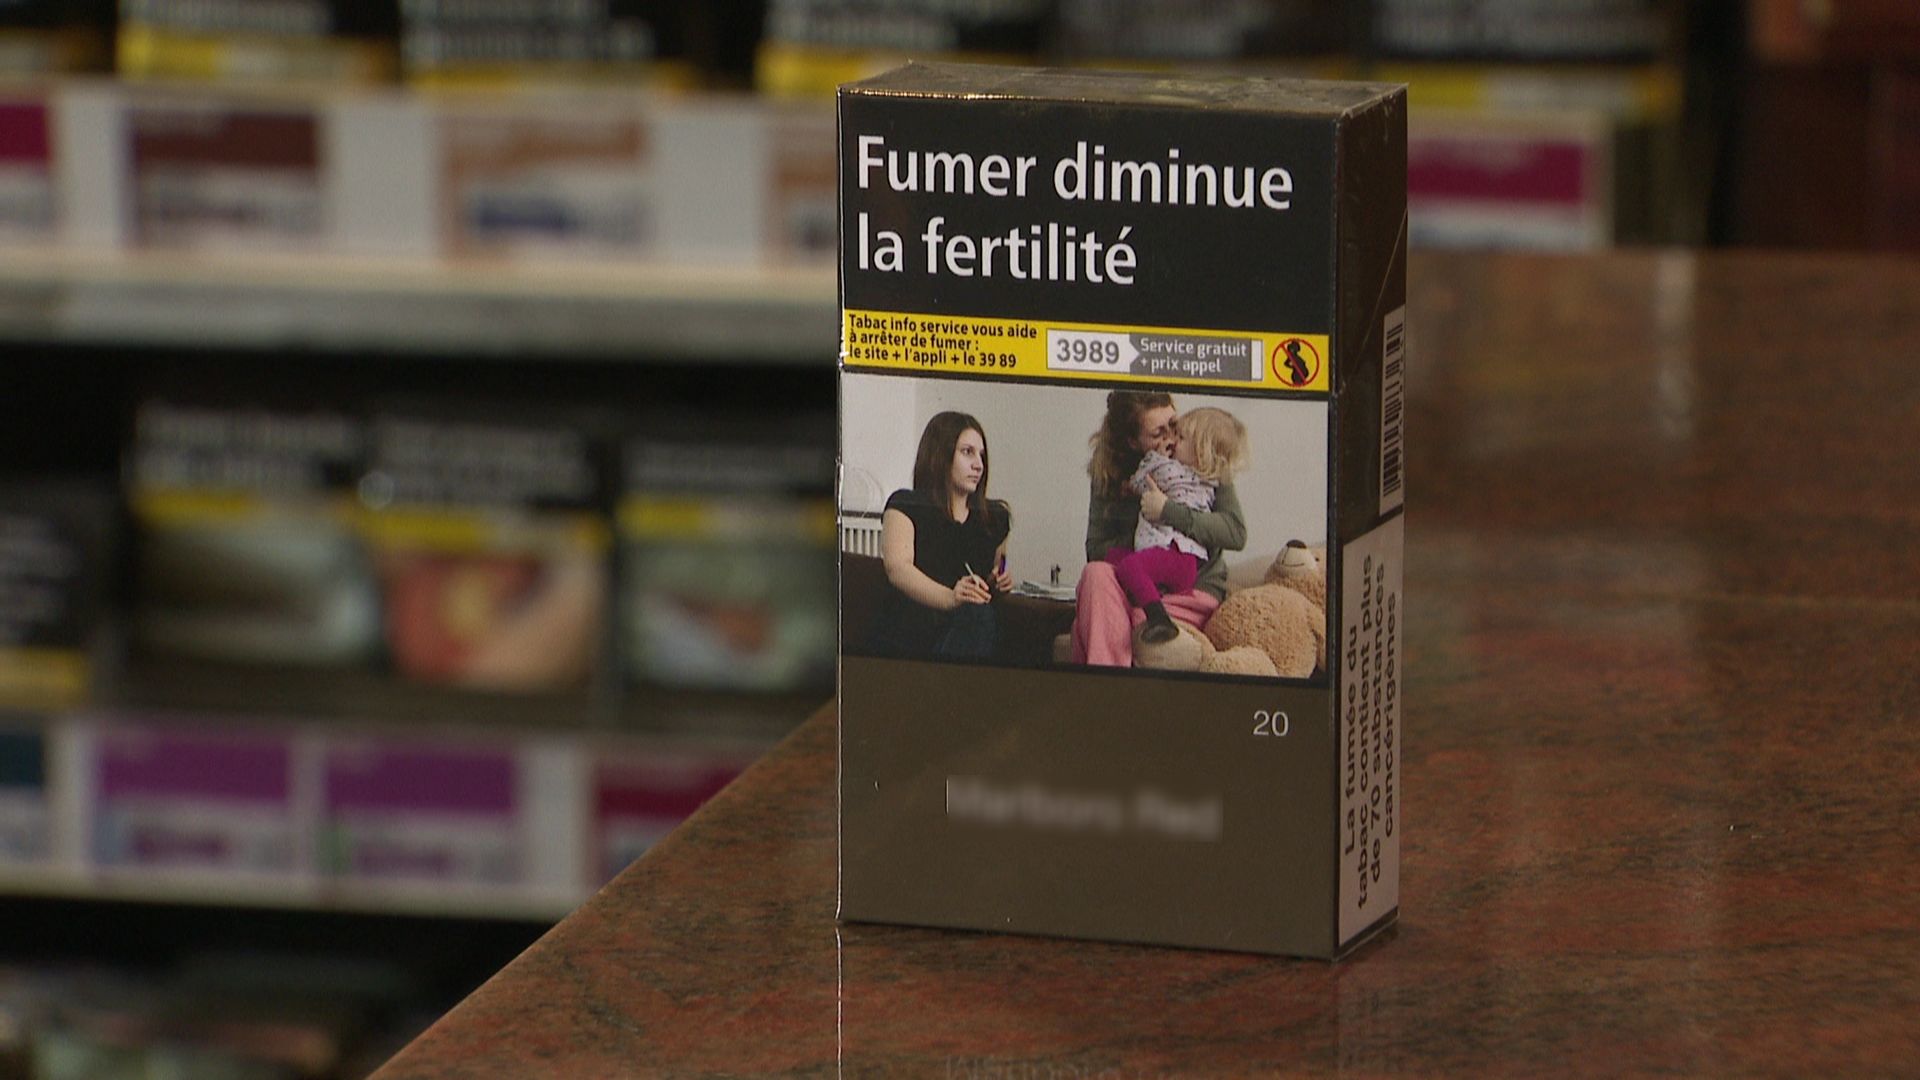 Le paquet de cigarettes neutre est obligatoire en France depuis janvier 2017